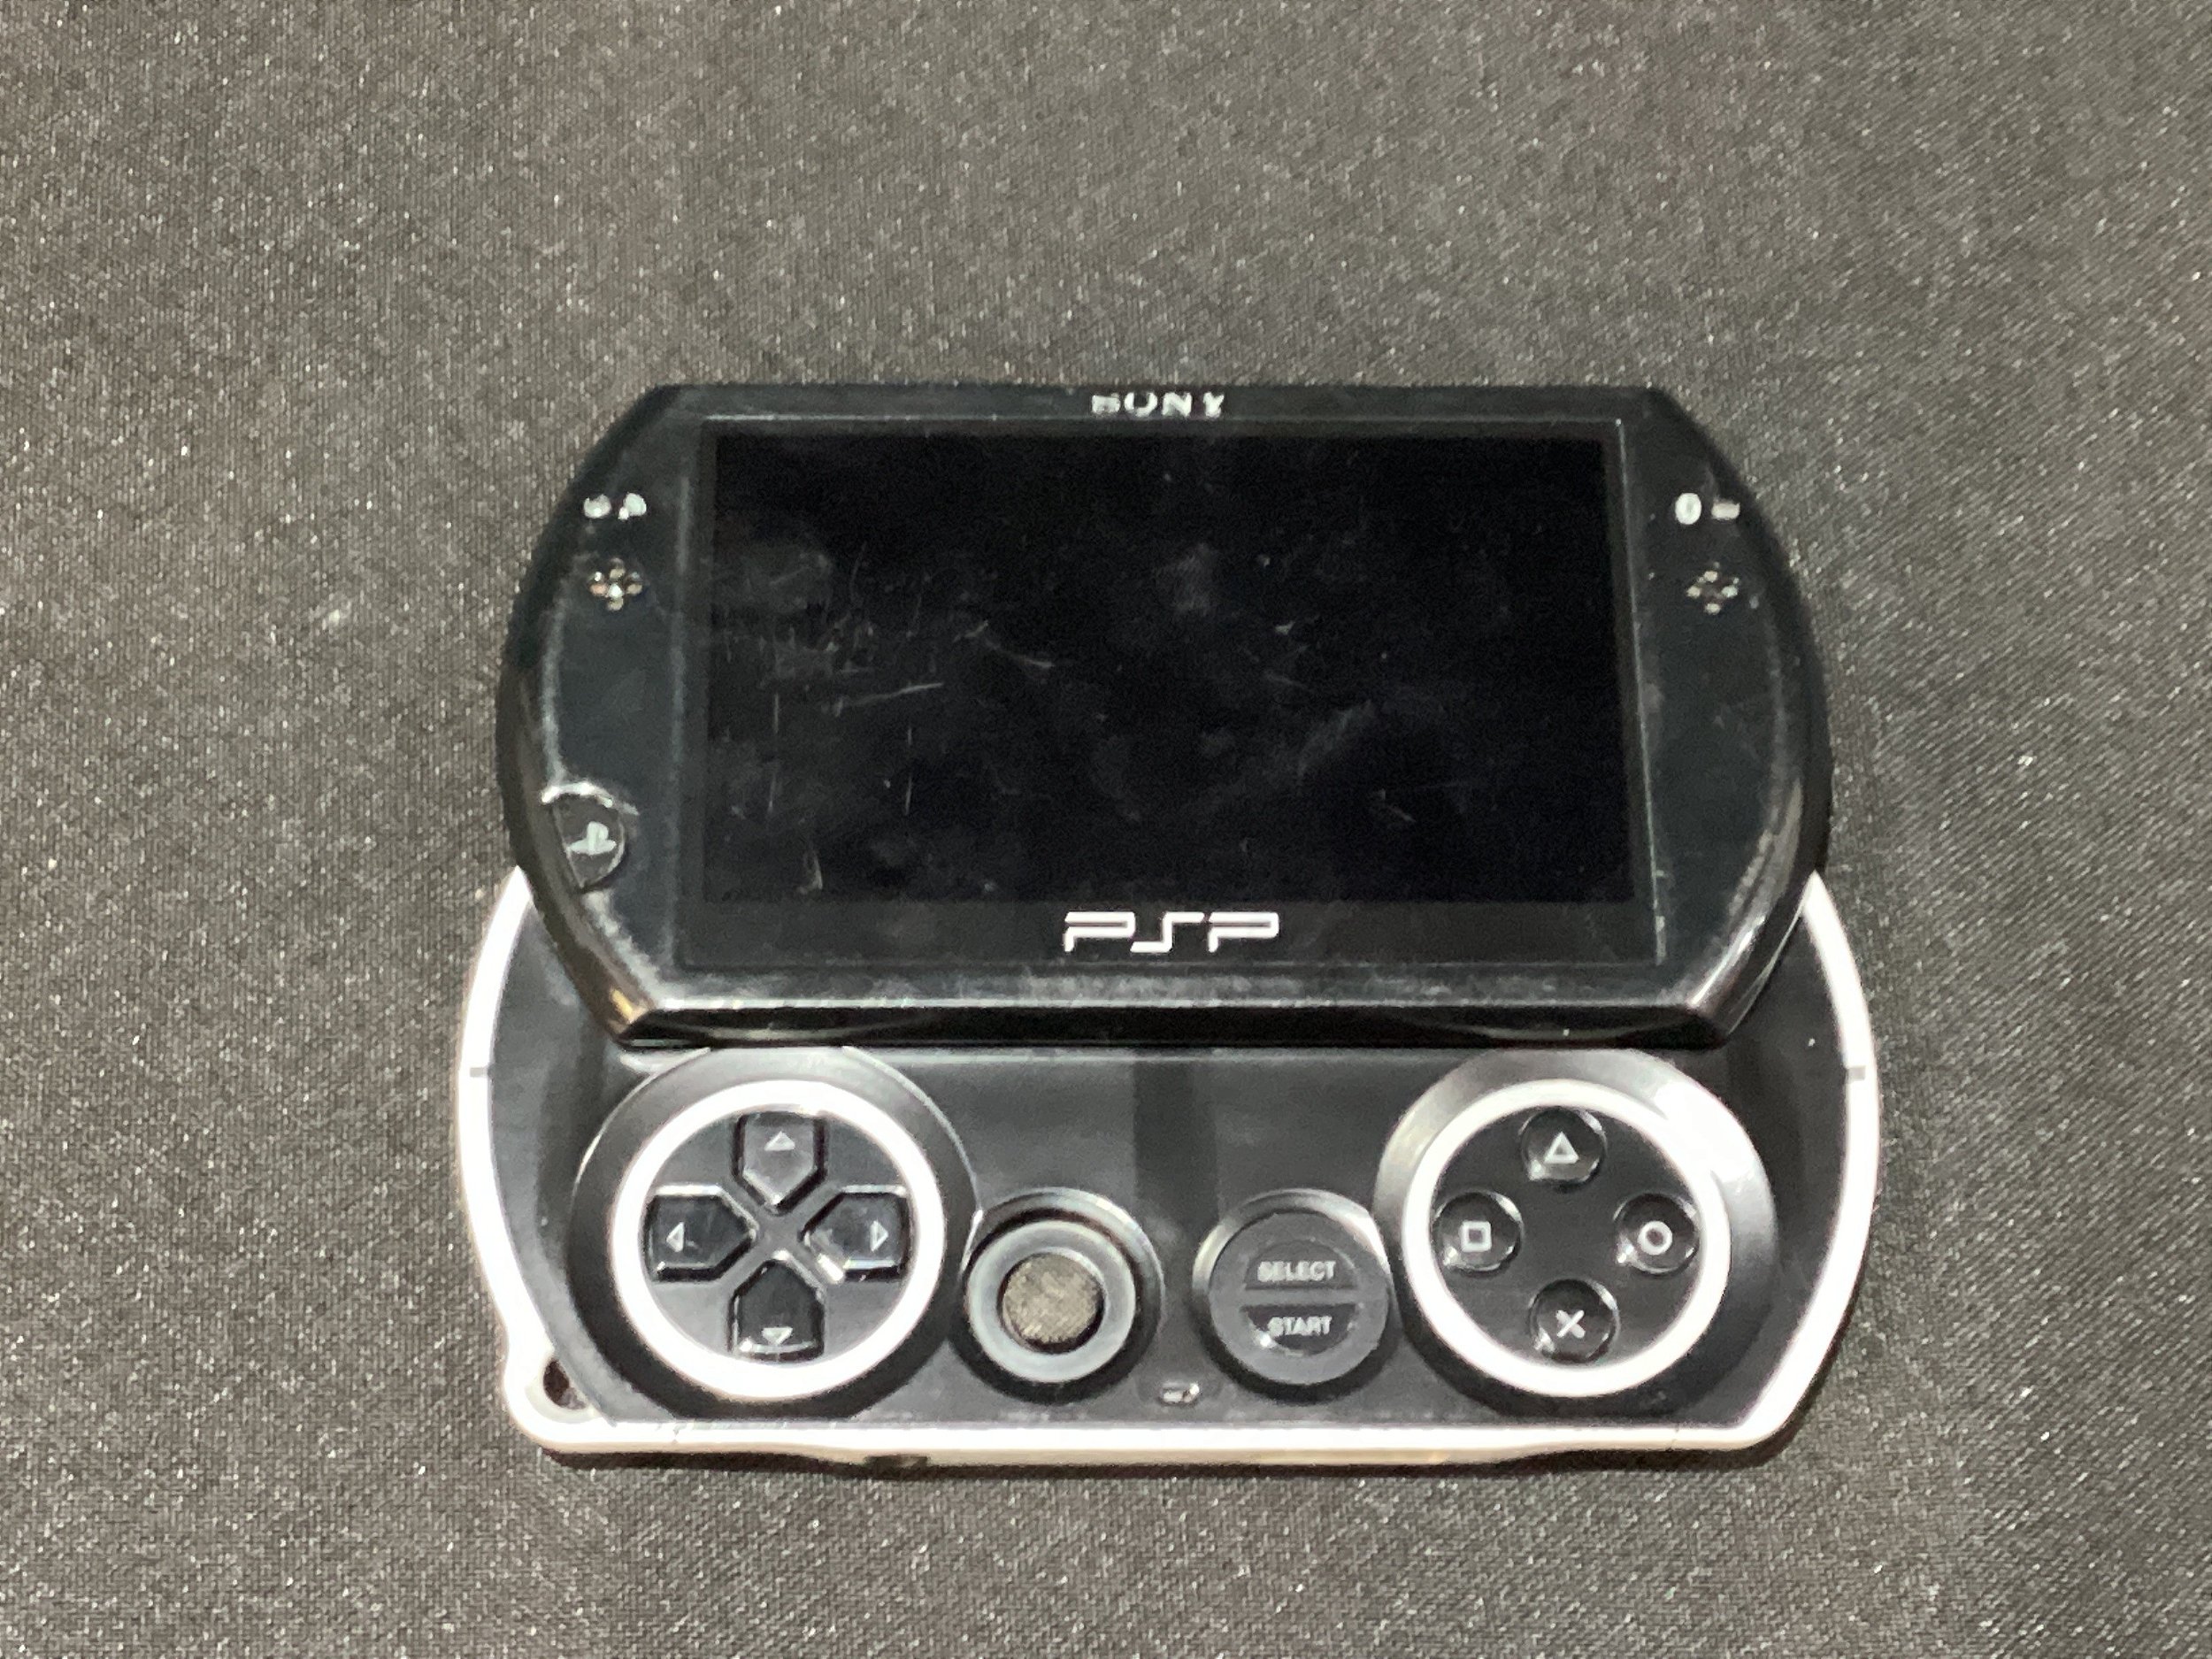 Preços baixos em Jogos de videogame Sony PSP GO